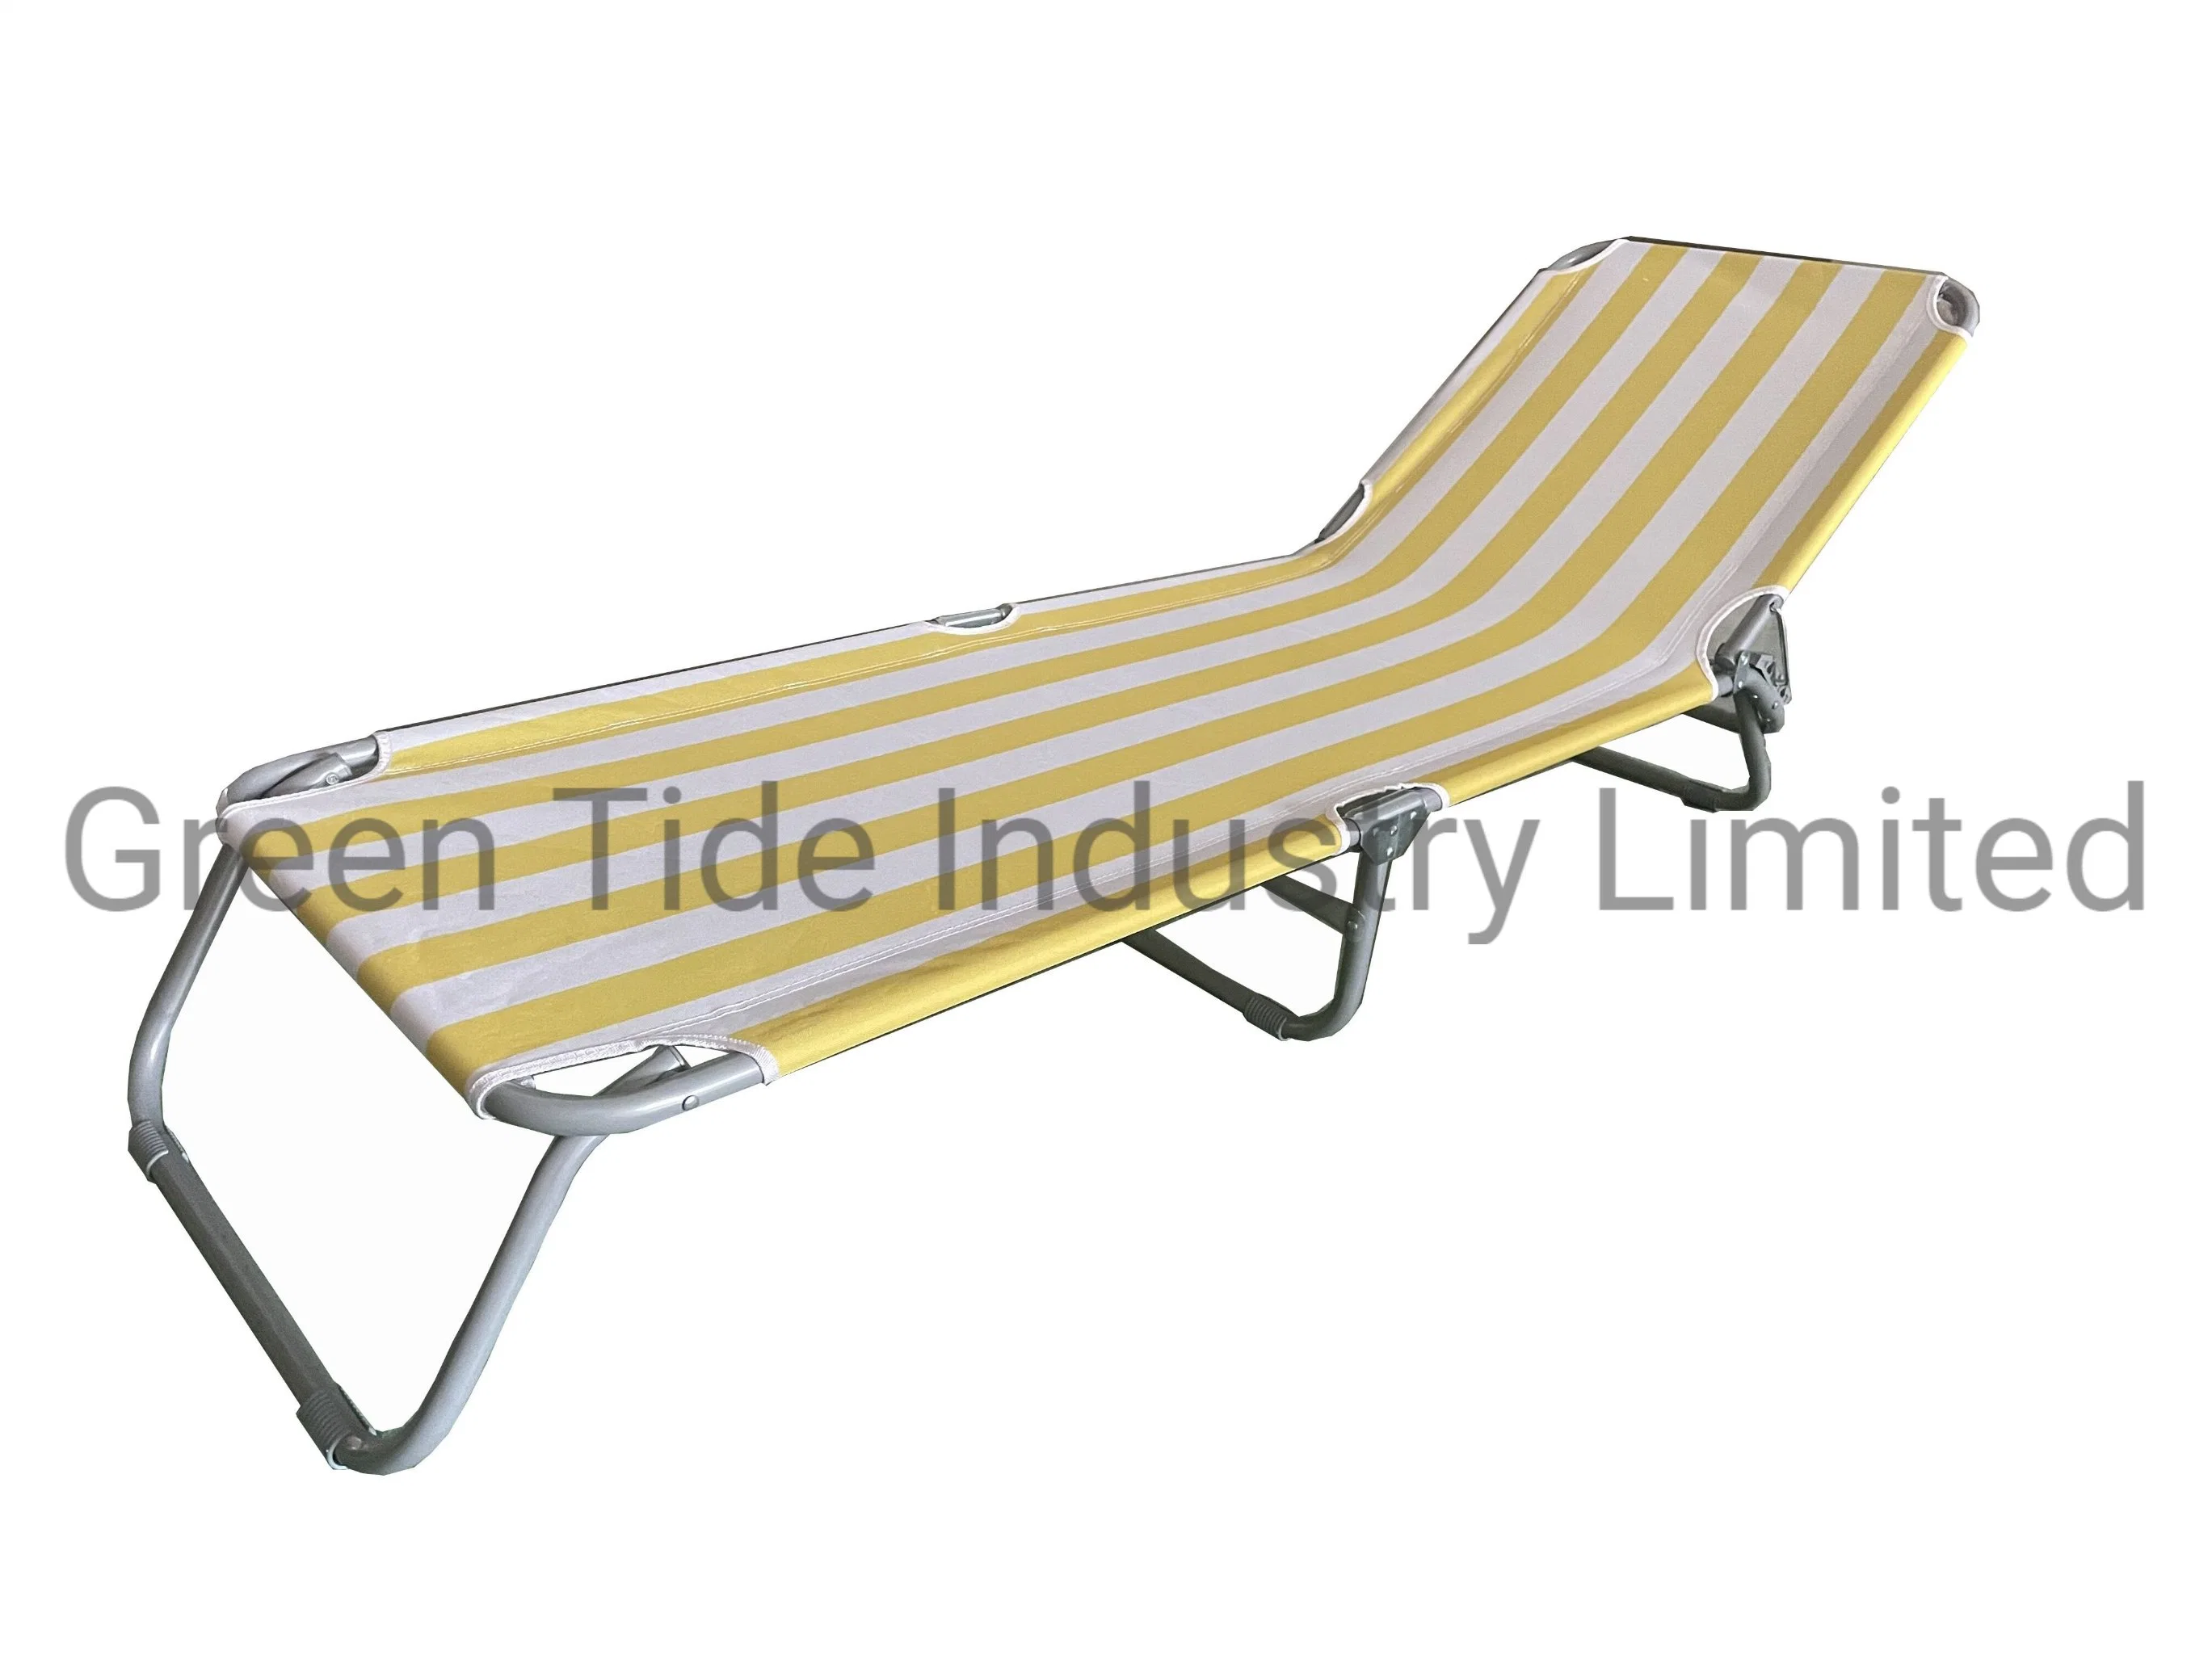 Faixas de móveis ao ar livre Chaise Lounge Folding Bed for Camping and Praia